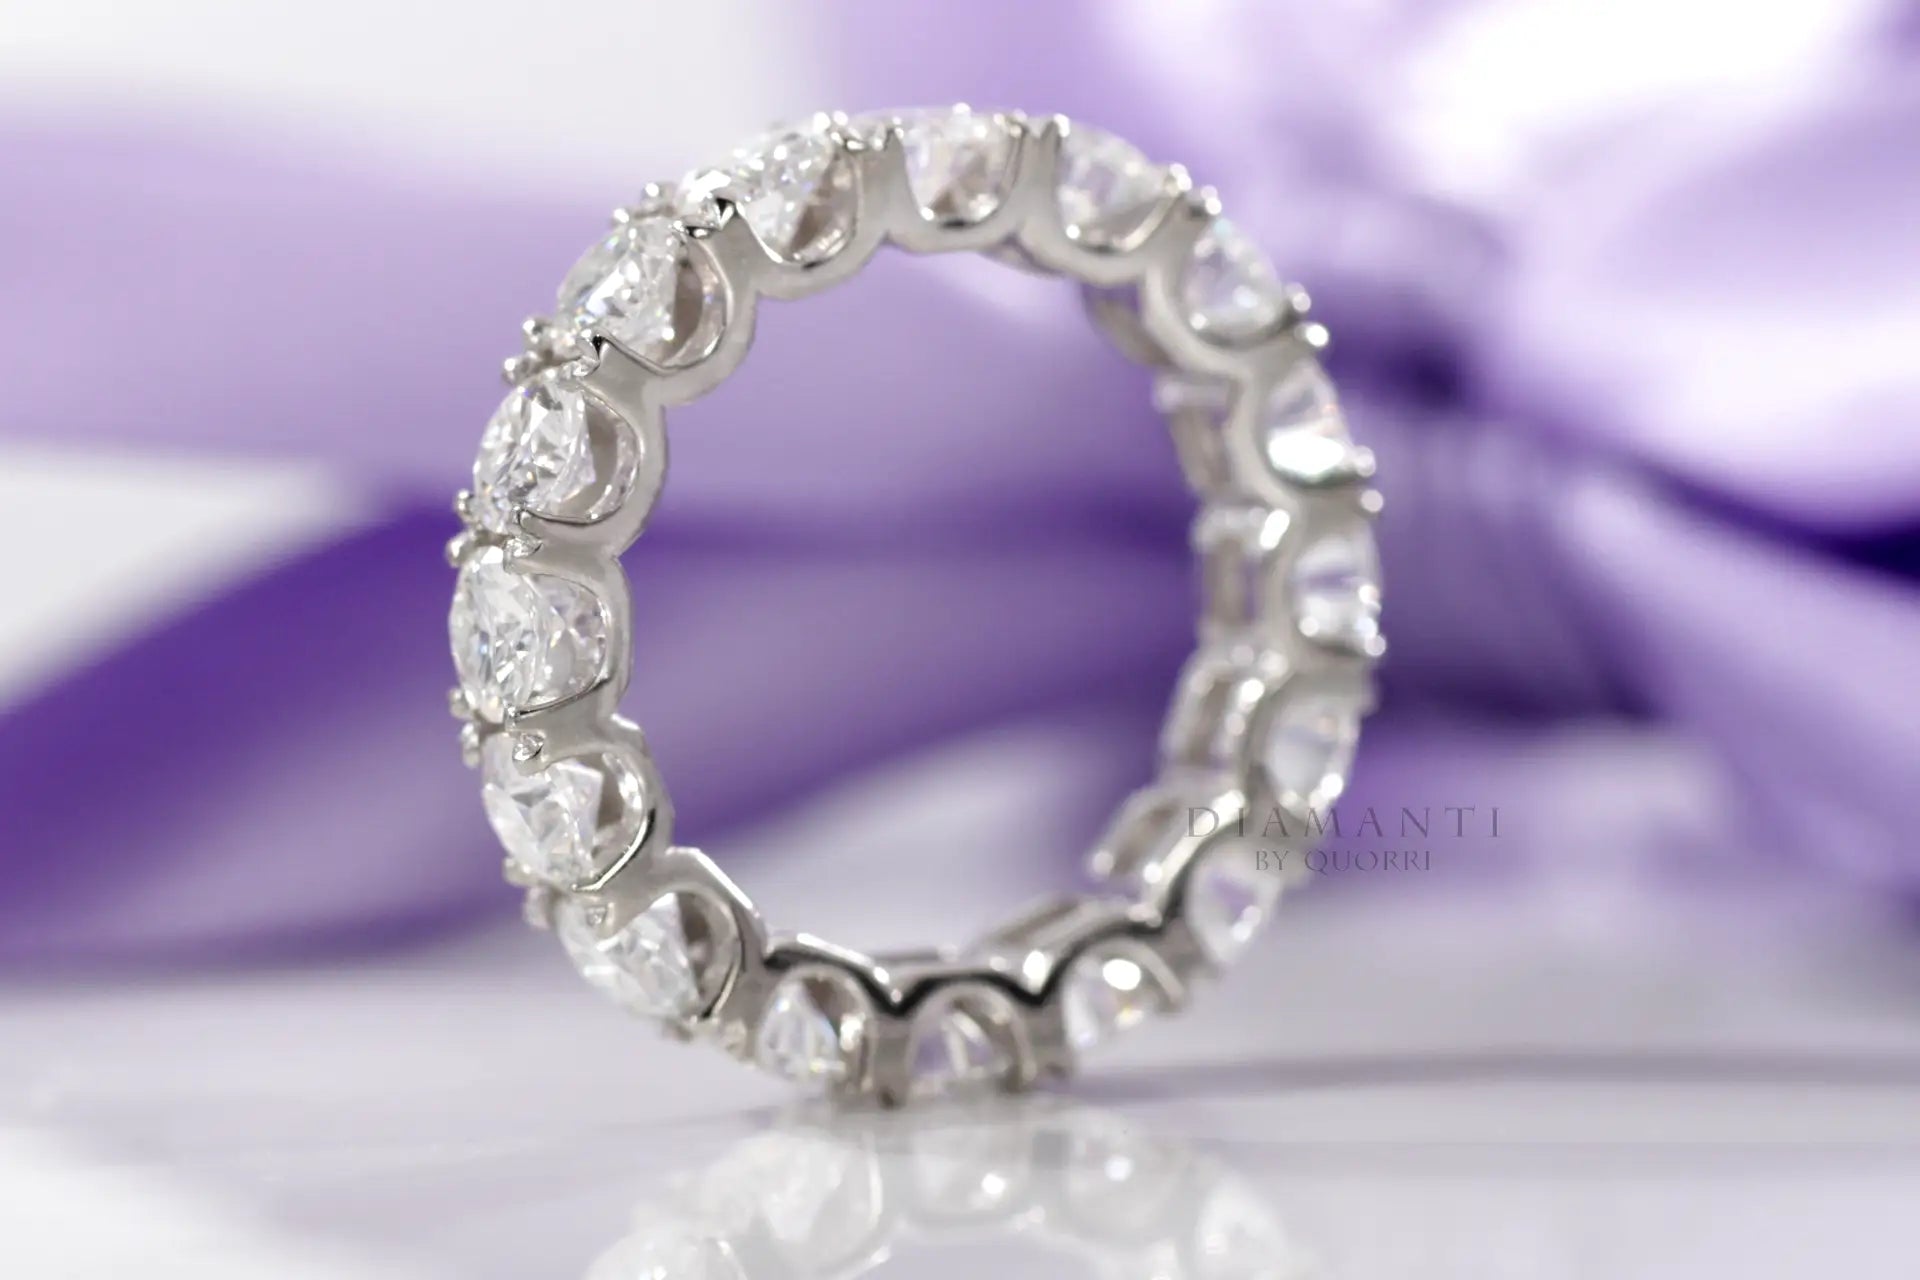 18k white gold affordable designer 2ct.tw round brilliant lab diamond eternity ring Quorri